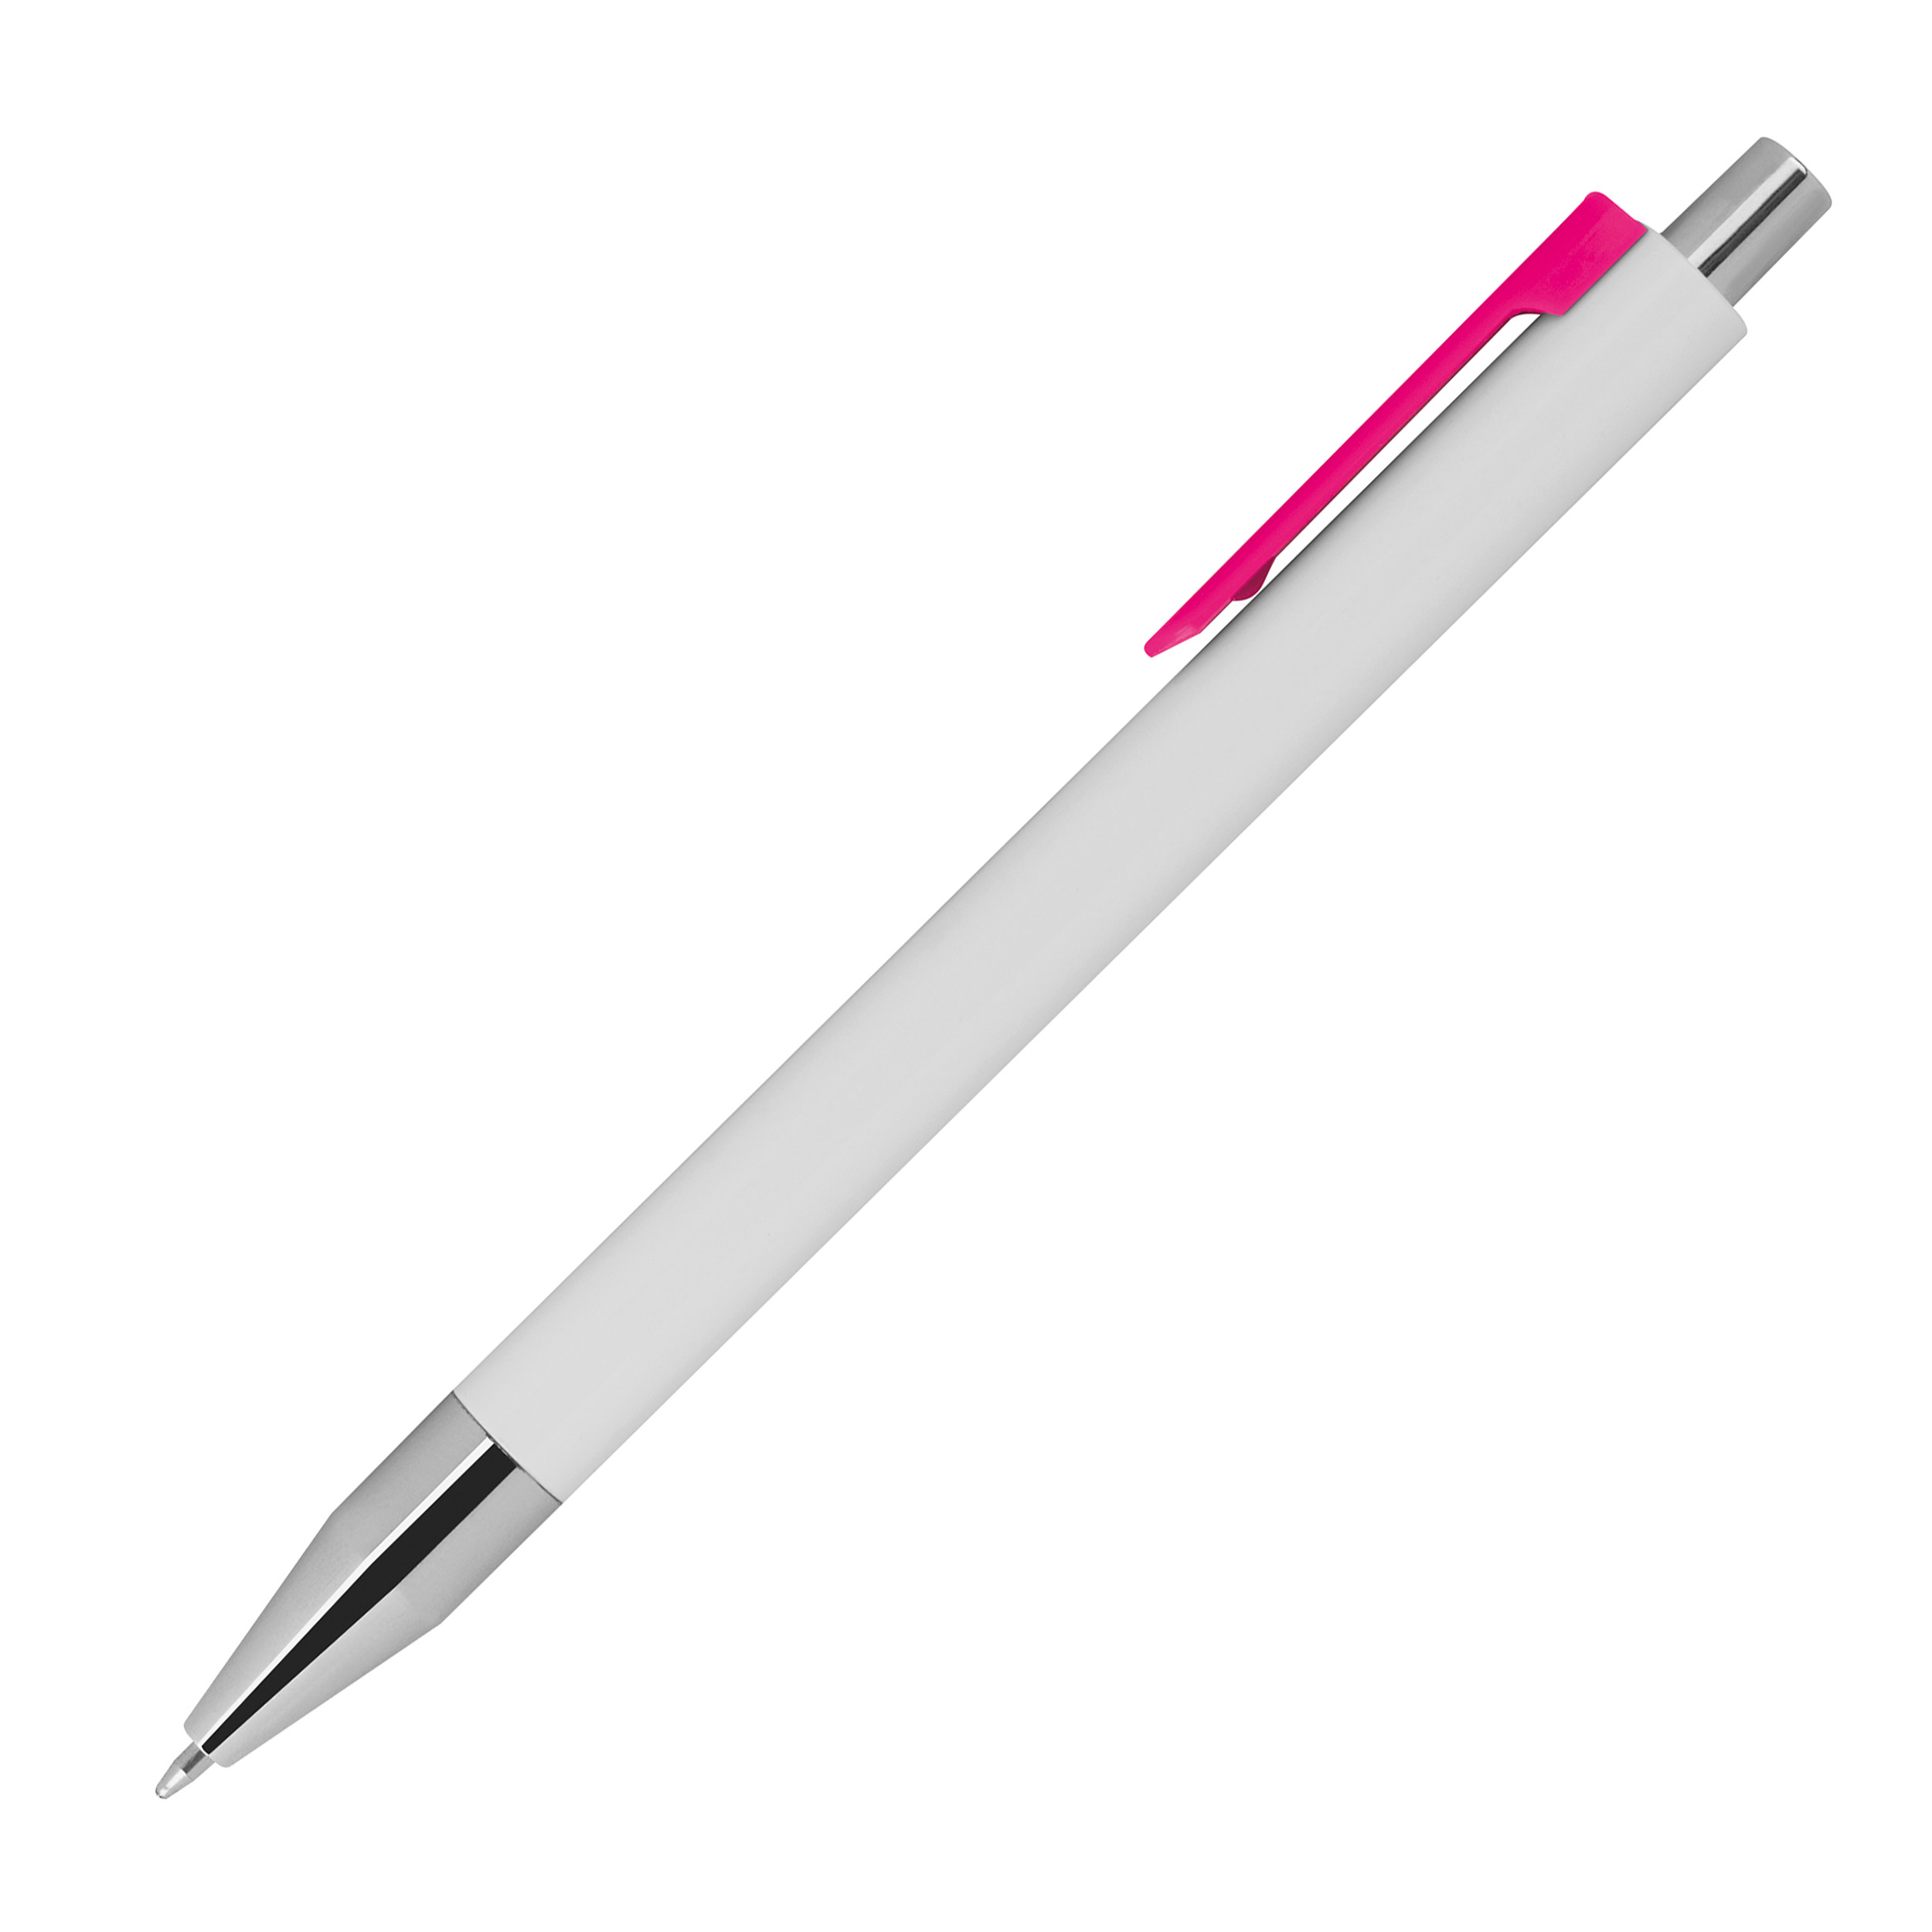 Kugelschreiber mit farbigen Clip